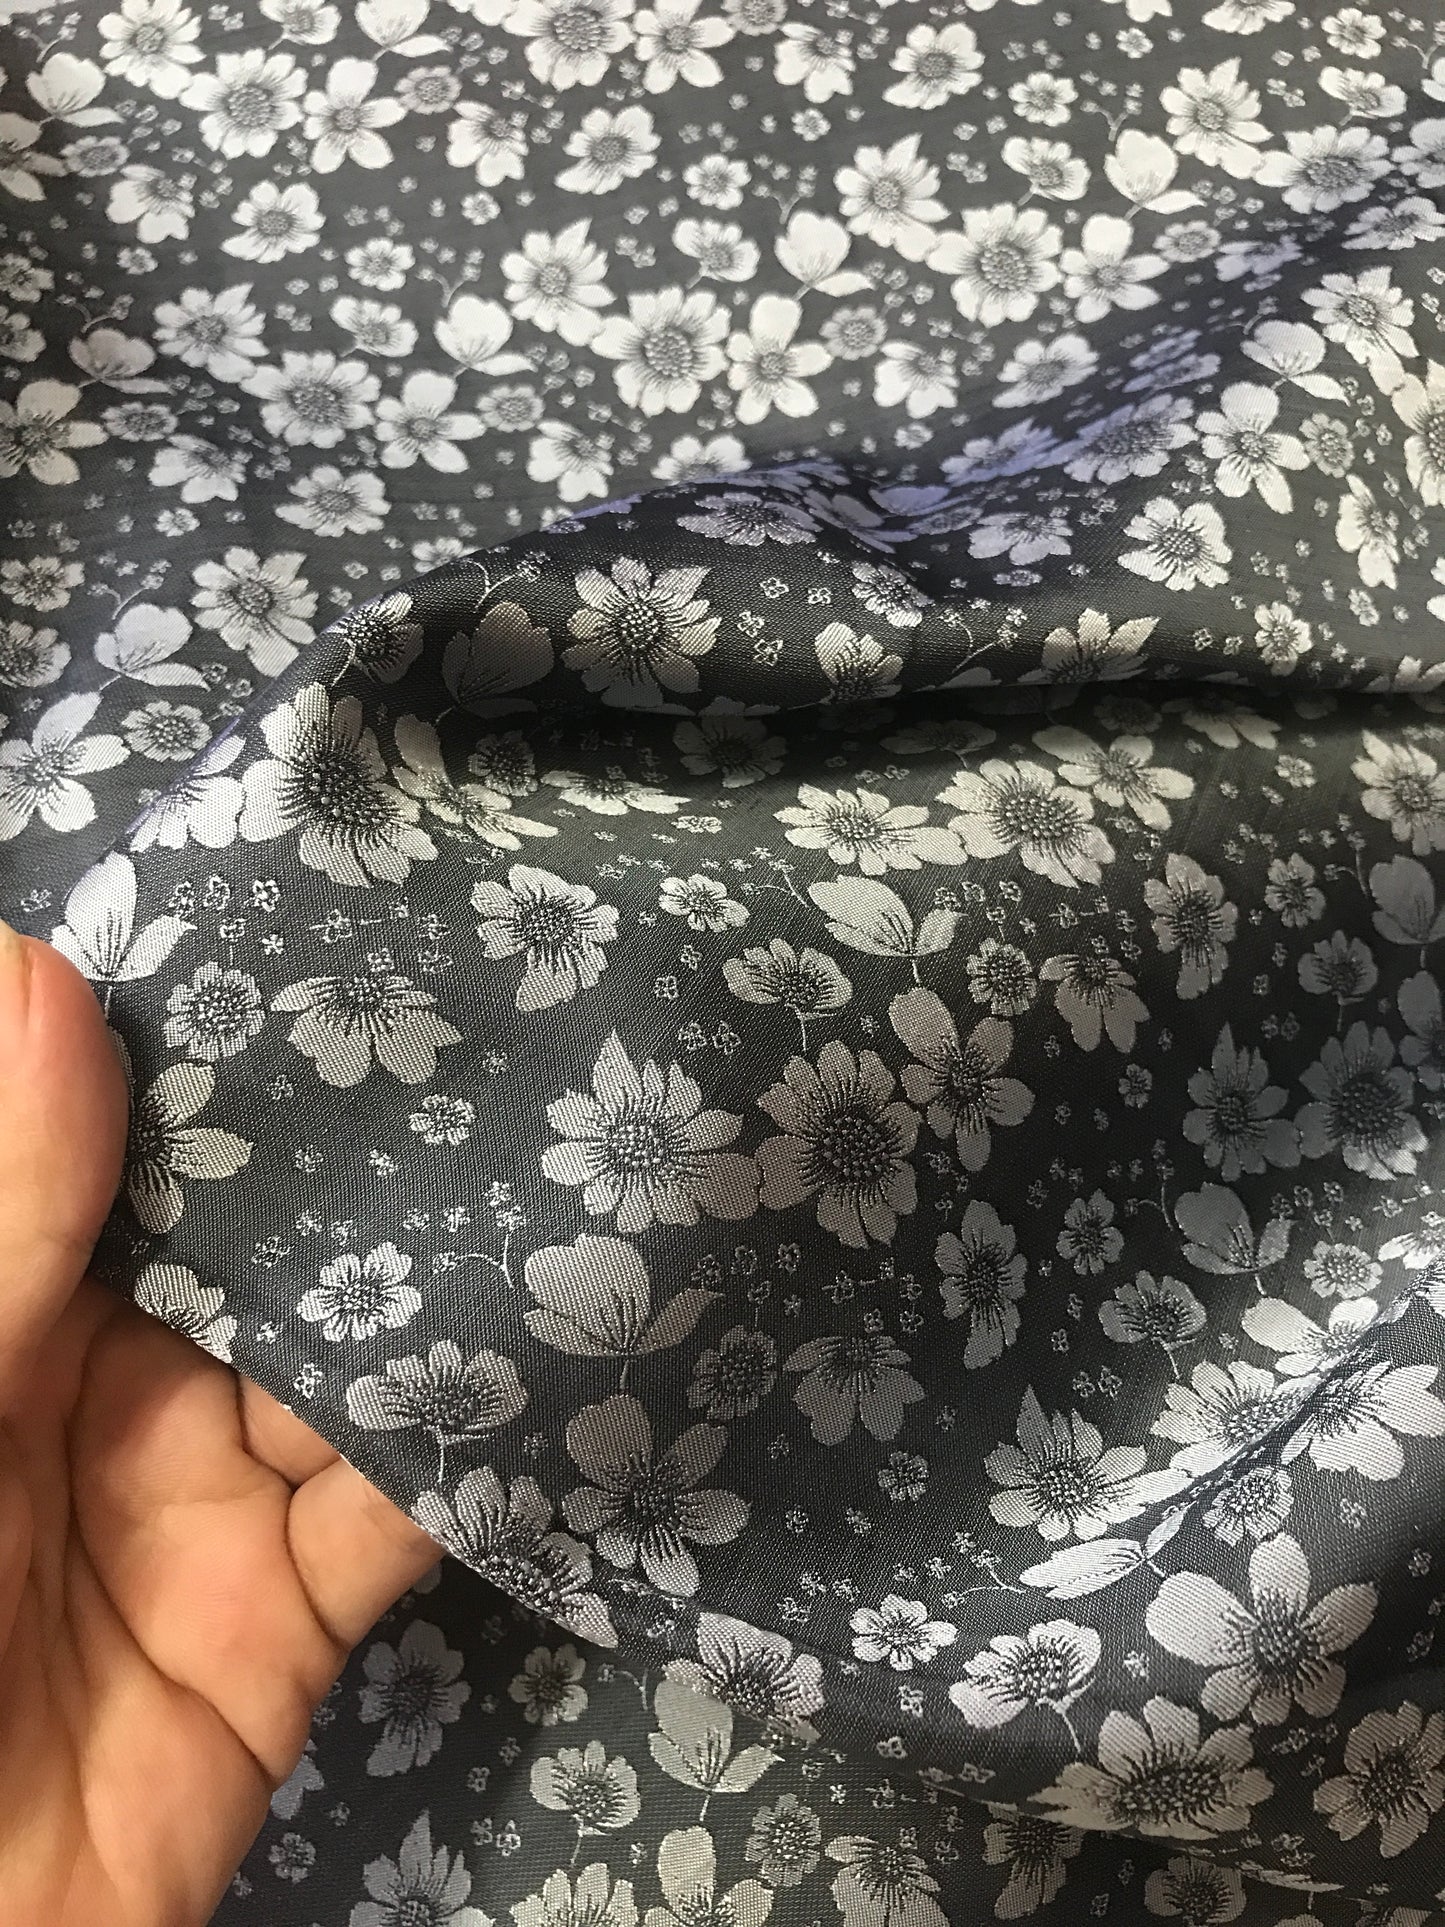 Dark Grey silk with flowers - PURE MULBERRY SILK fabric by the yard - Shadow Grey silk with flowers - Floral Silk -Luxury Silk - Natural silk - Handmade in VietNam